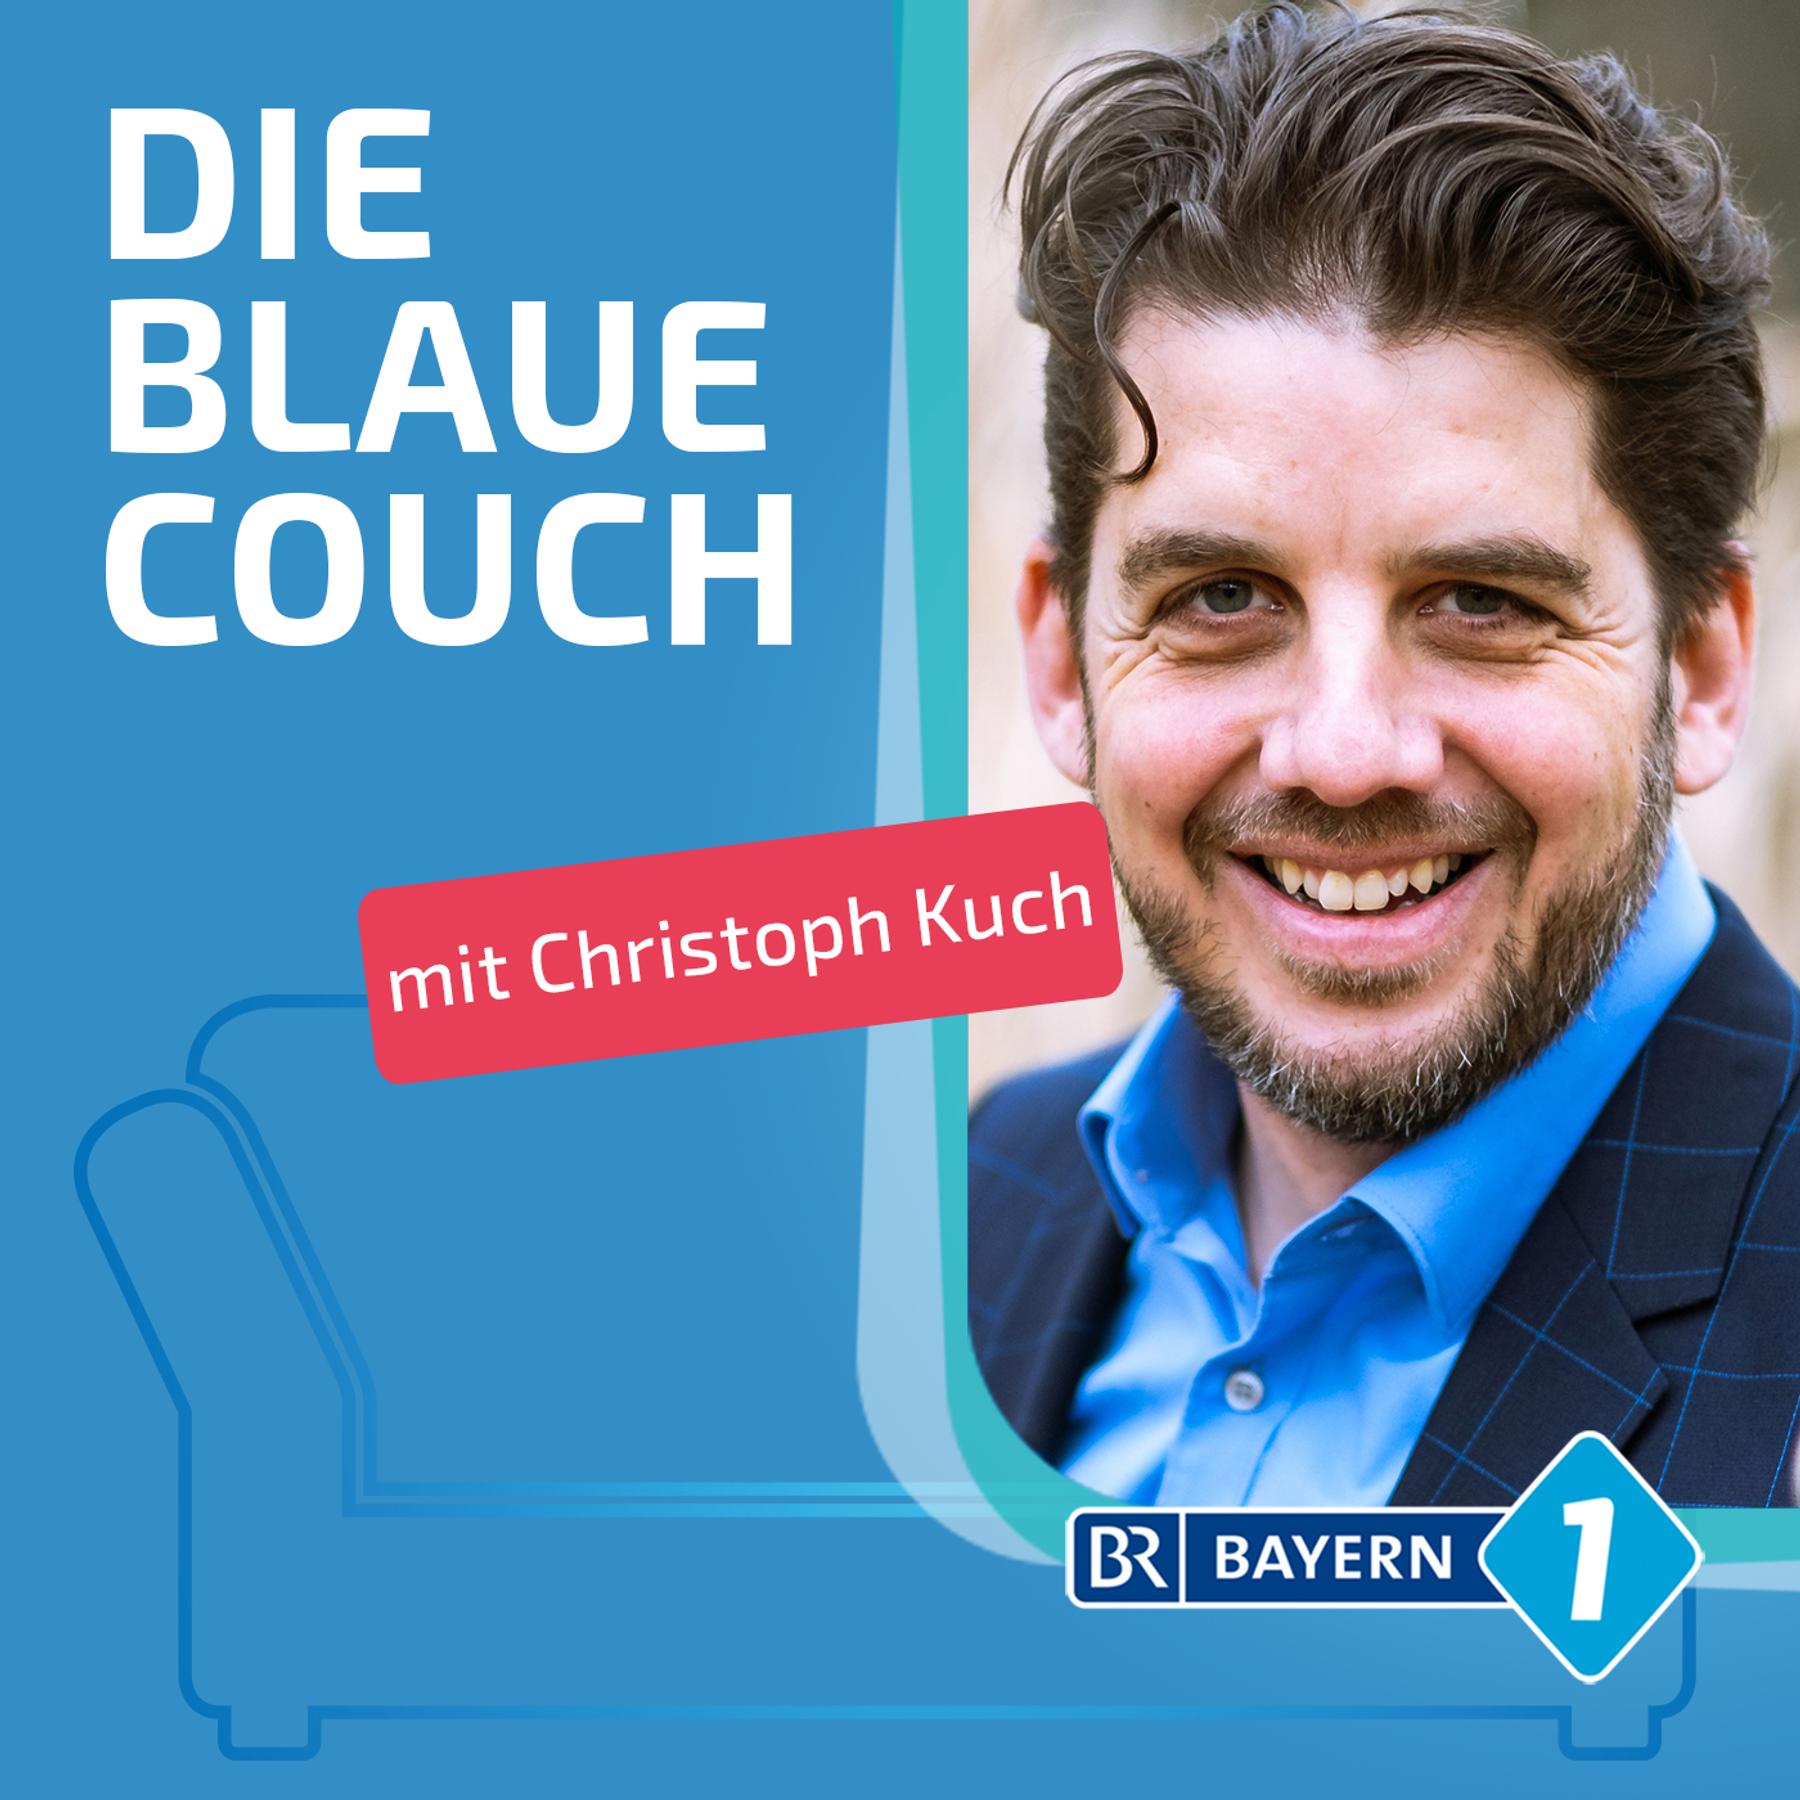 Christoph Kuch, Mentalmagier